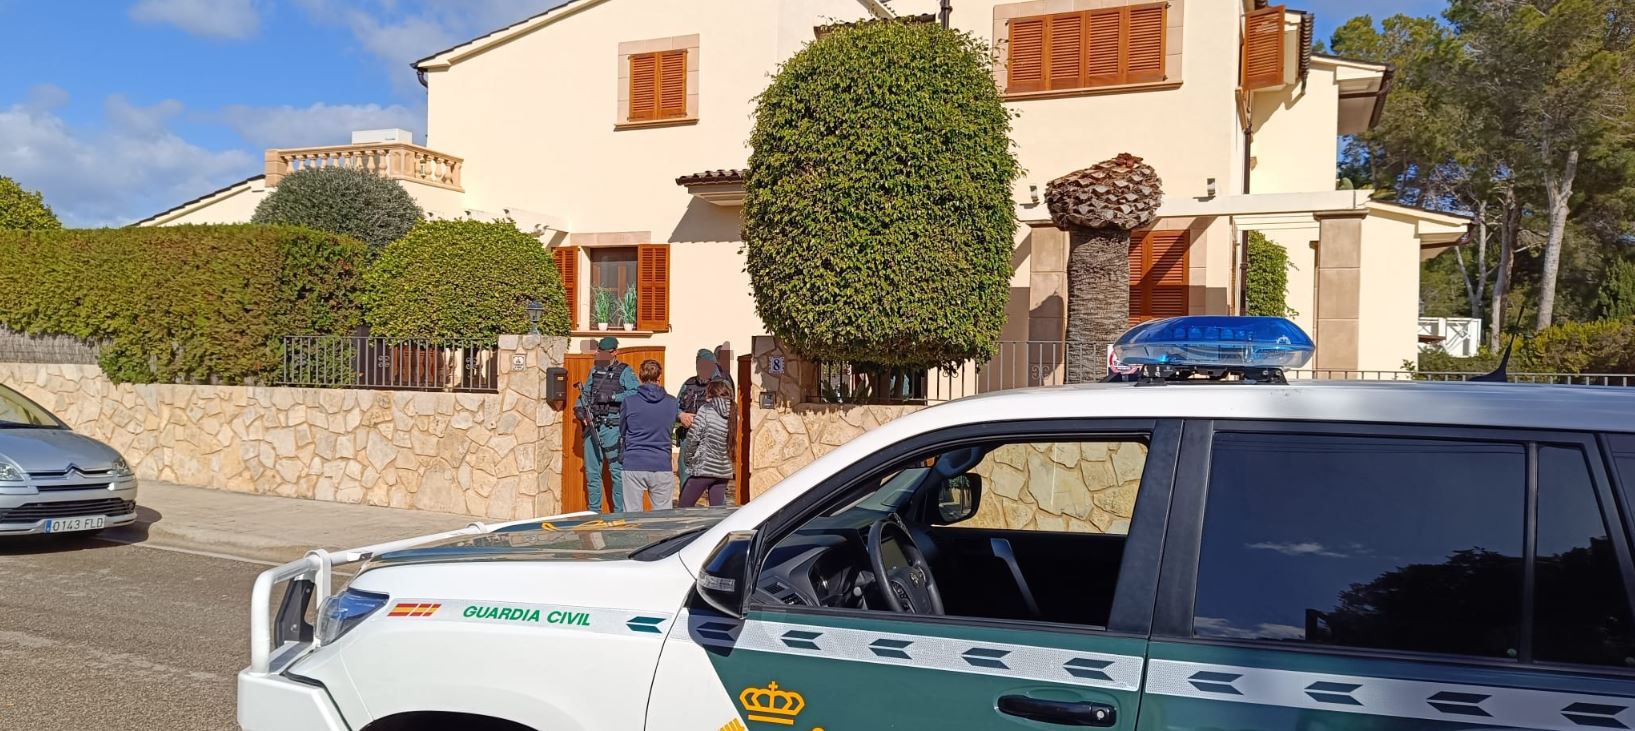 Guardia Civil y policías alemanes realizan una operación en Cala Rajada contra una organización internacional de blanqueo de dinero